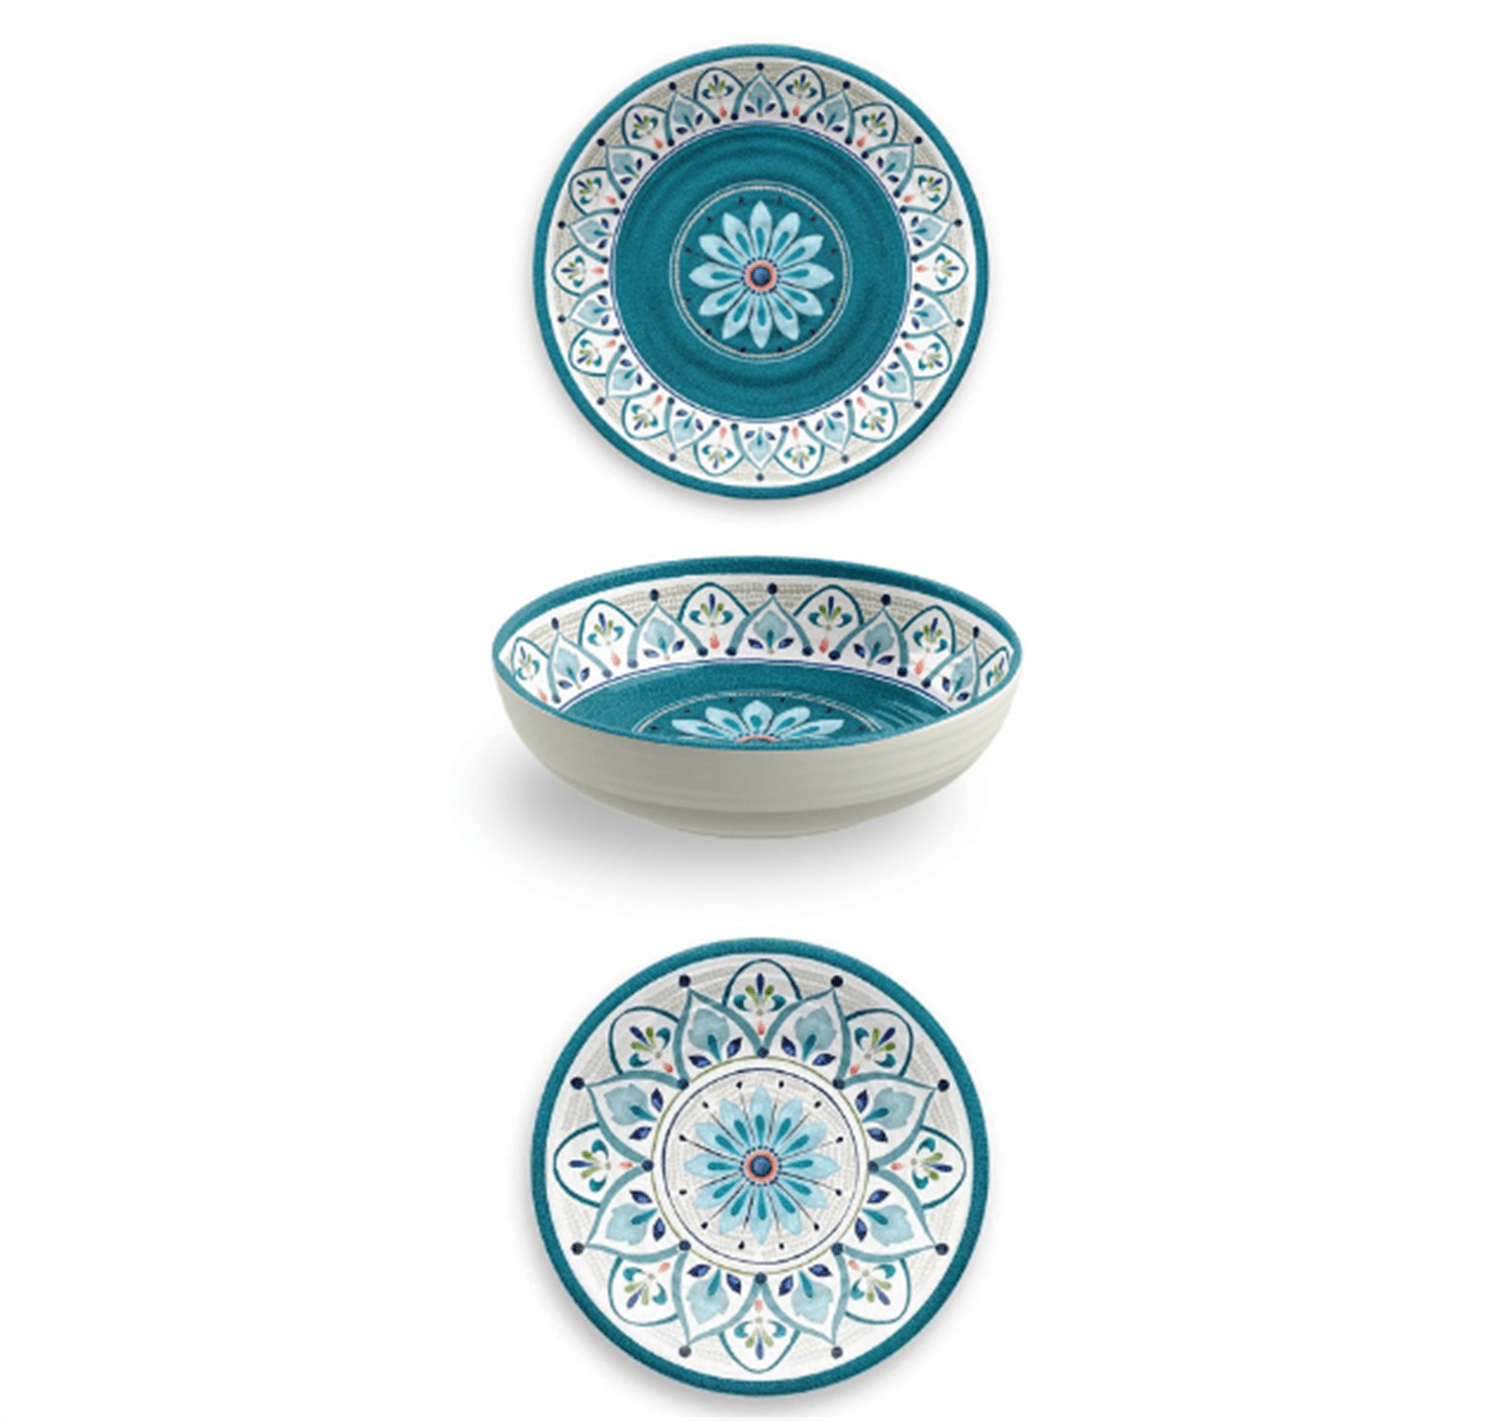 Servizio piatti in melamina, linea Rabat, 18 pezzi